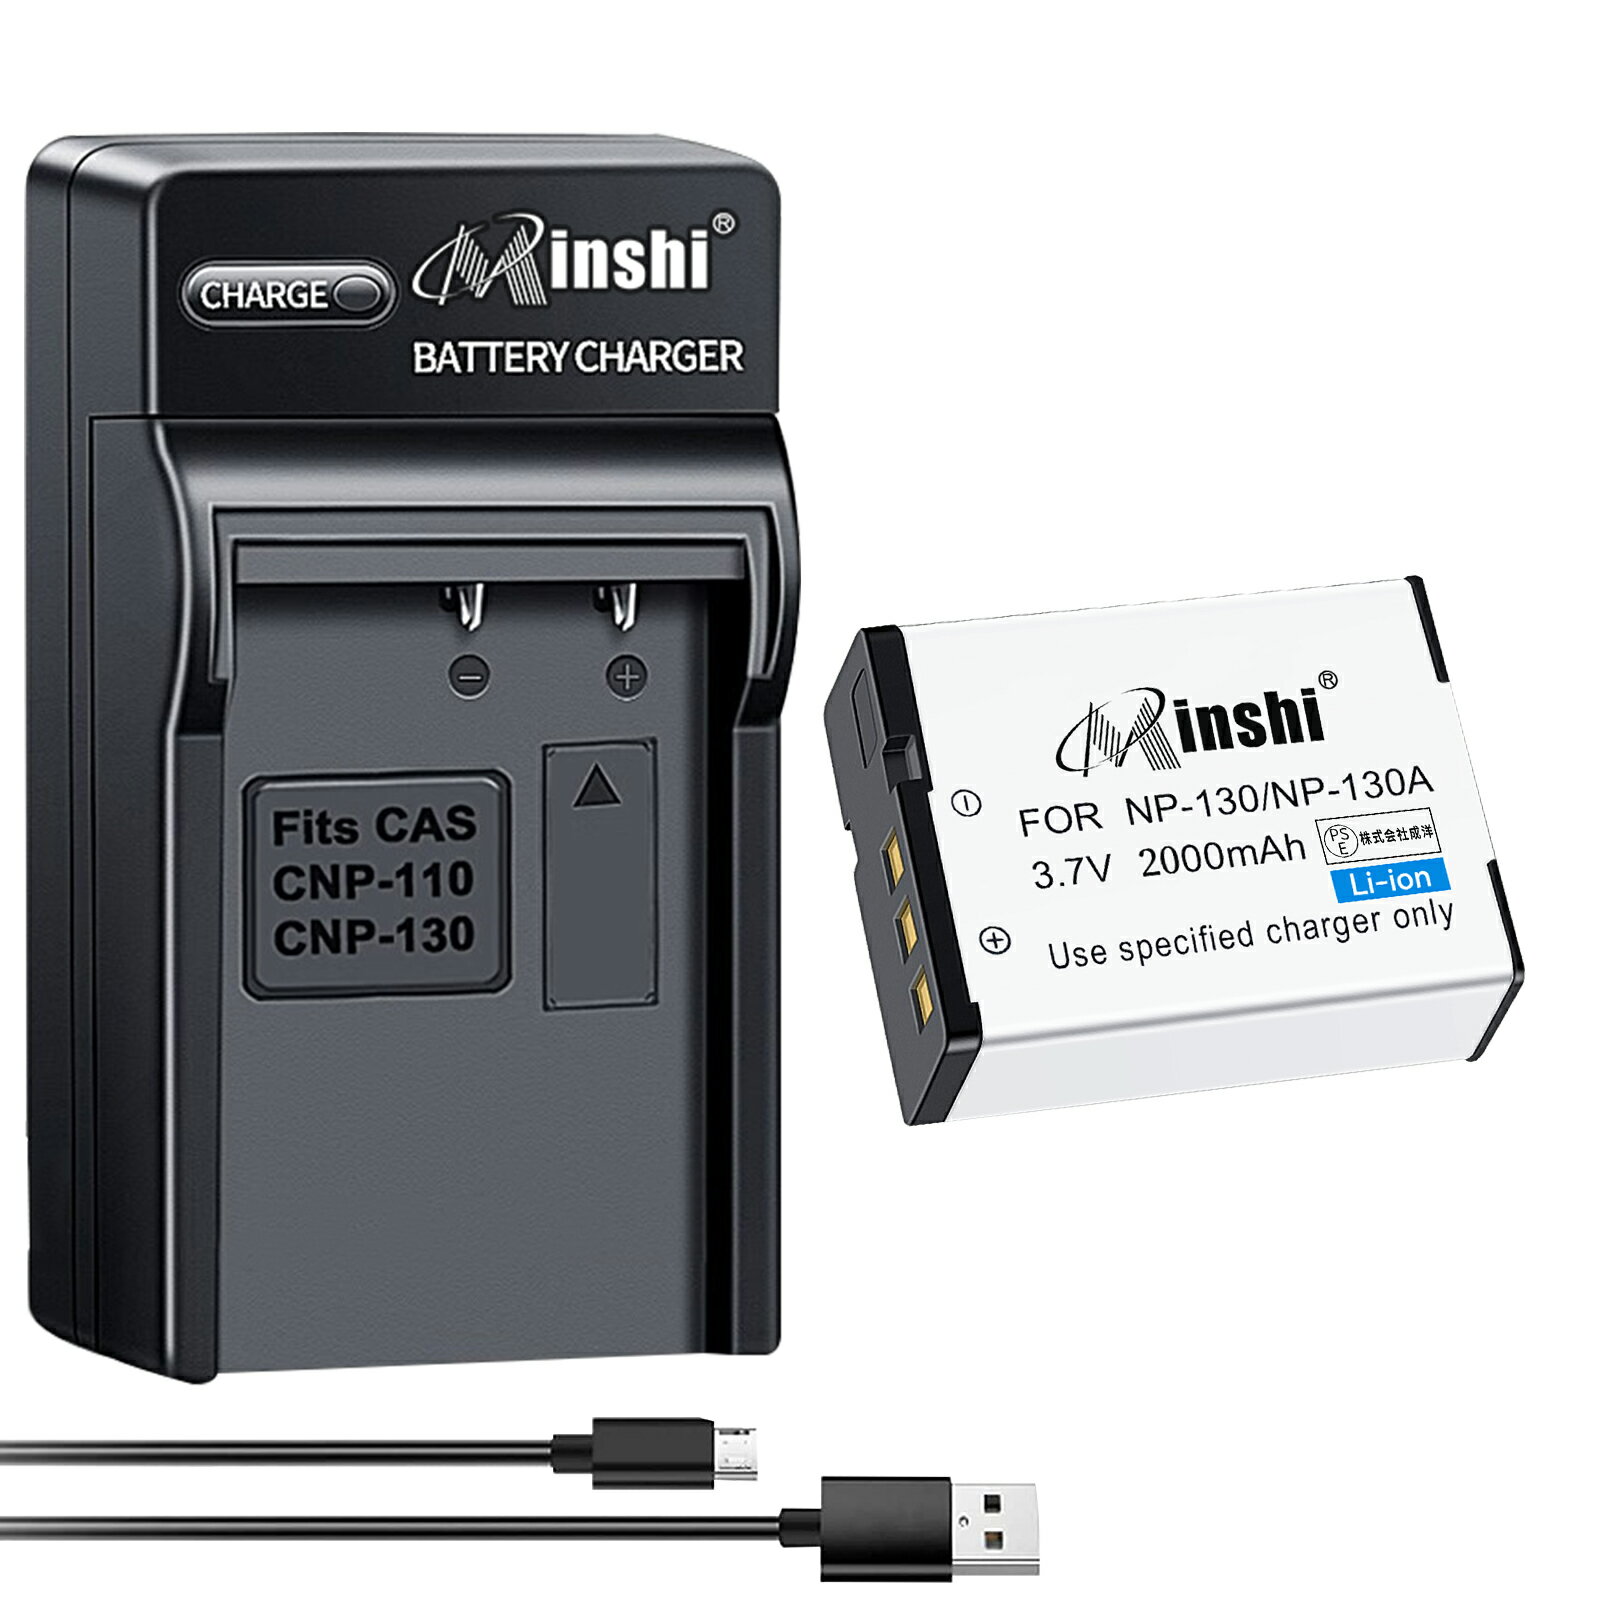 【USB充電器と電池1個】minshi 新品 Casio EX-ZR1000 互換バッテリー 2000mAh 高品質交換用リチャージブル カメラバッテリー リチウムイオンバッテリー デジタルカメラ デジカメ 充電池 PSE認証 1年間保証 予備バッテリー